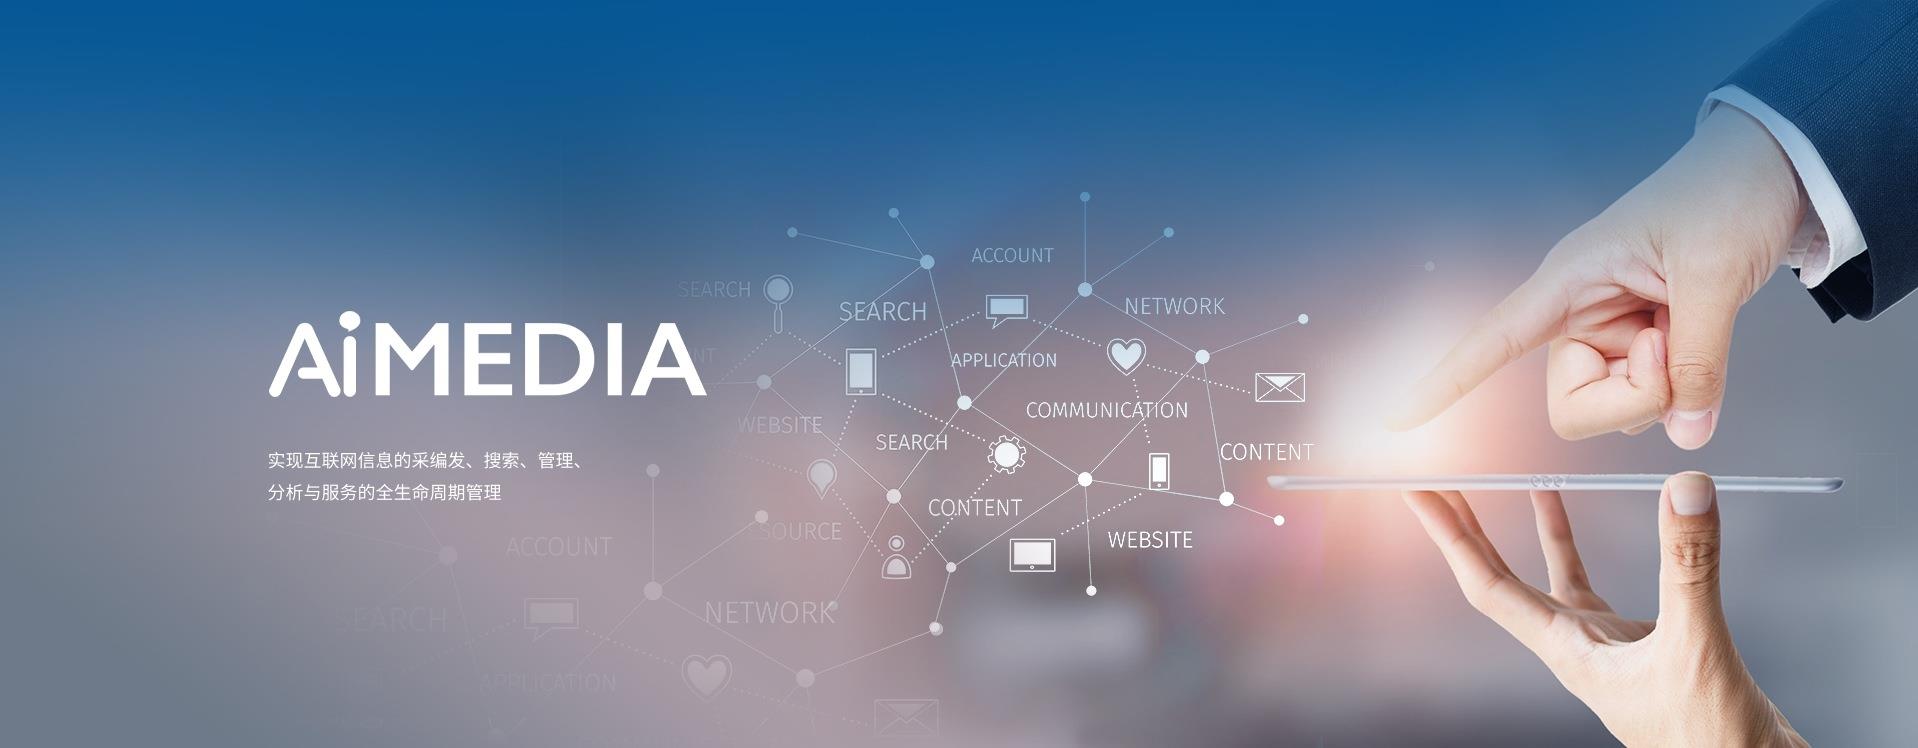 AiMedia新媒体管理系统